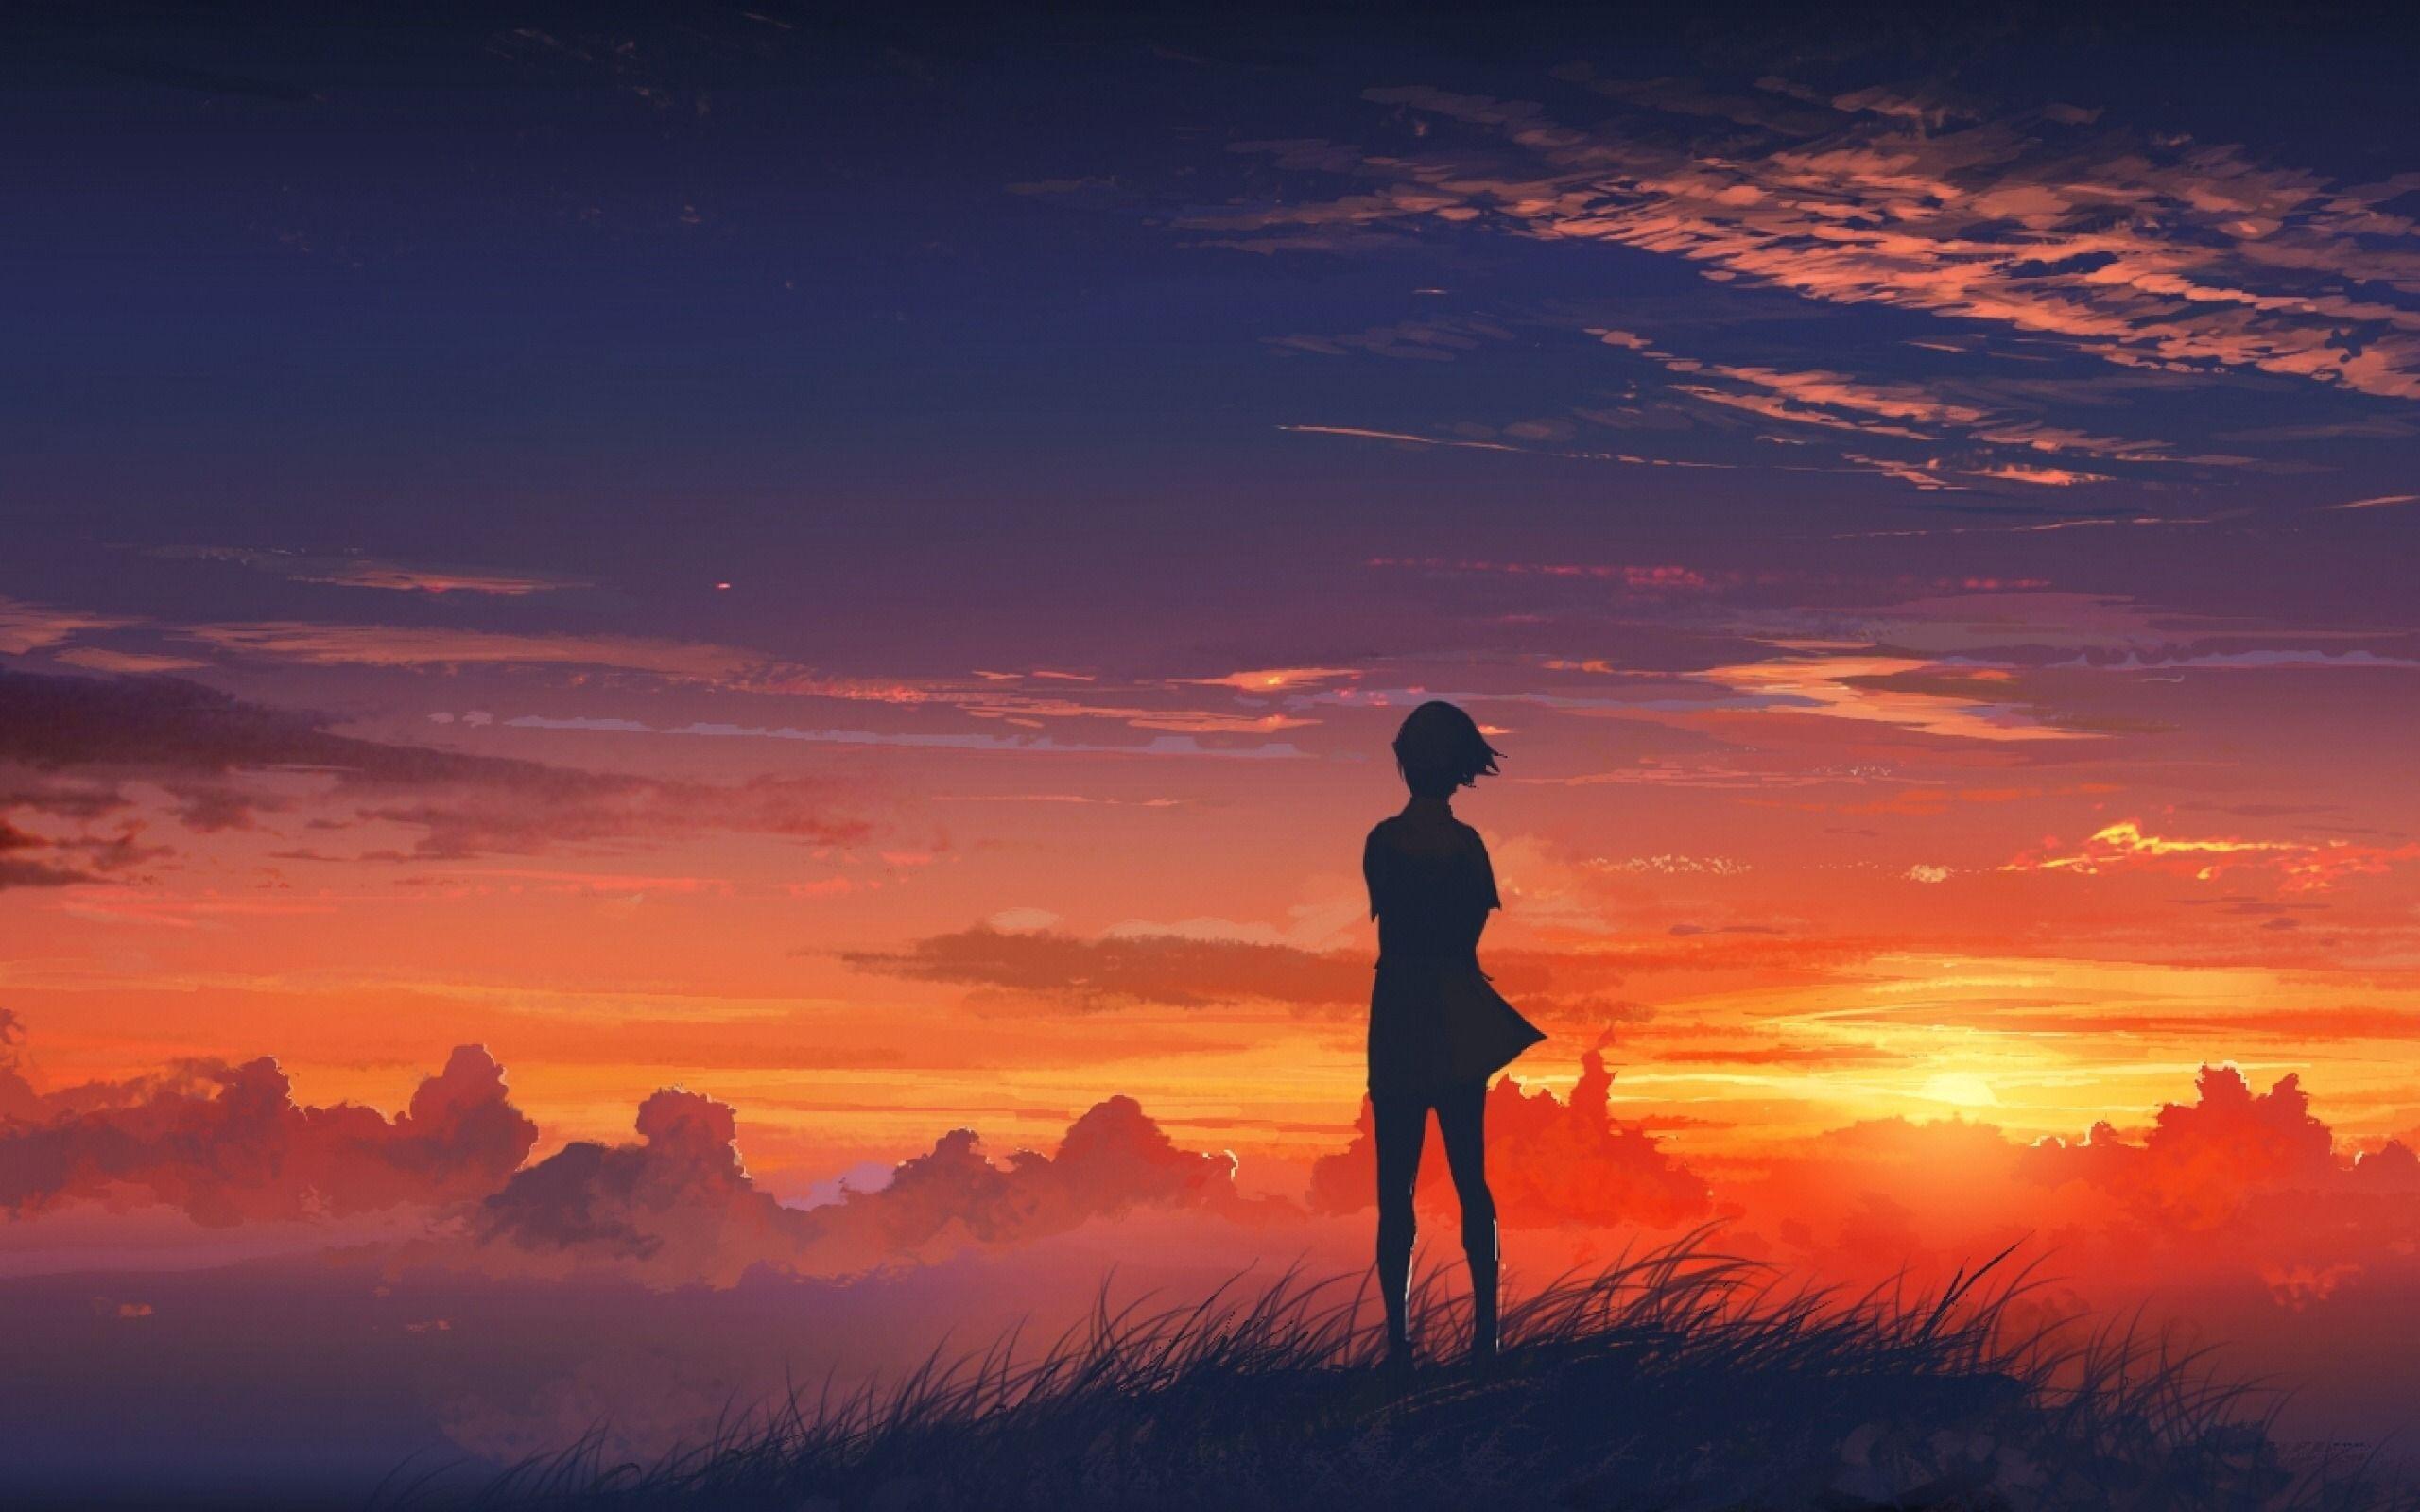 Original sunset landscape anime girl wallpaper background - pling.com